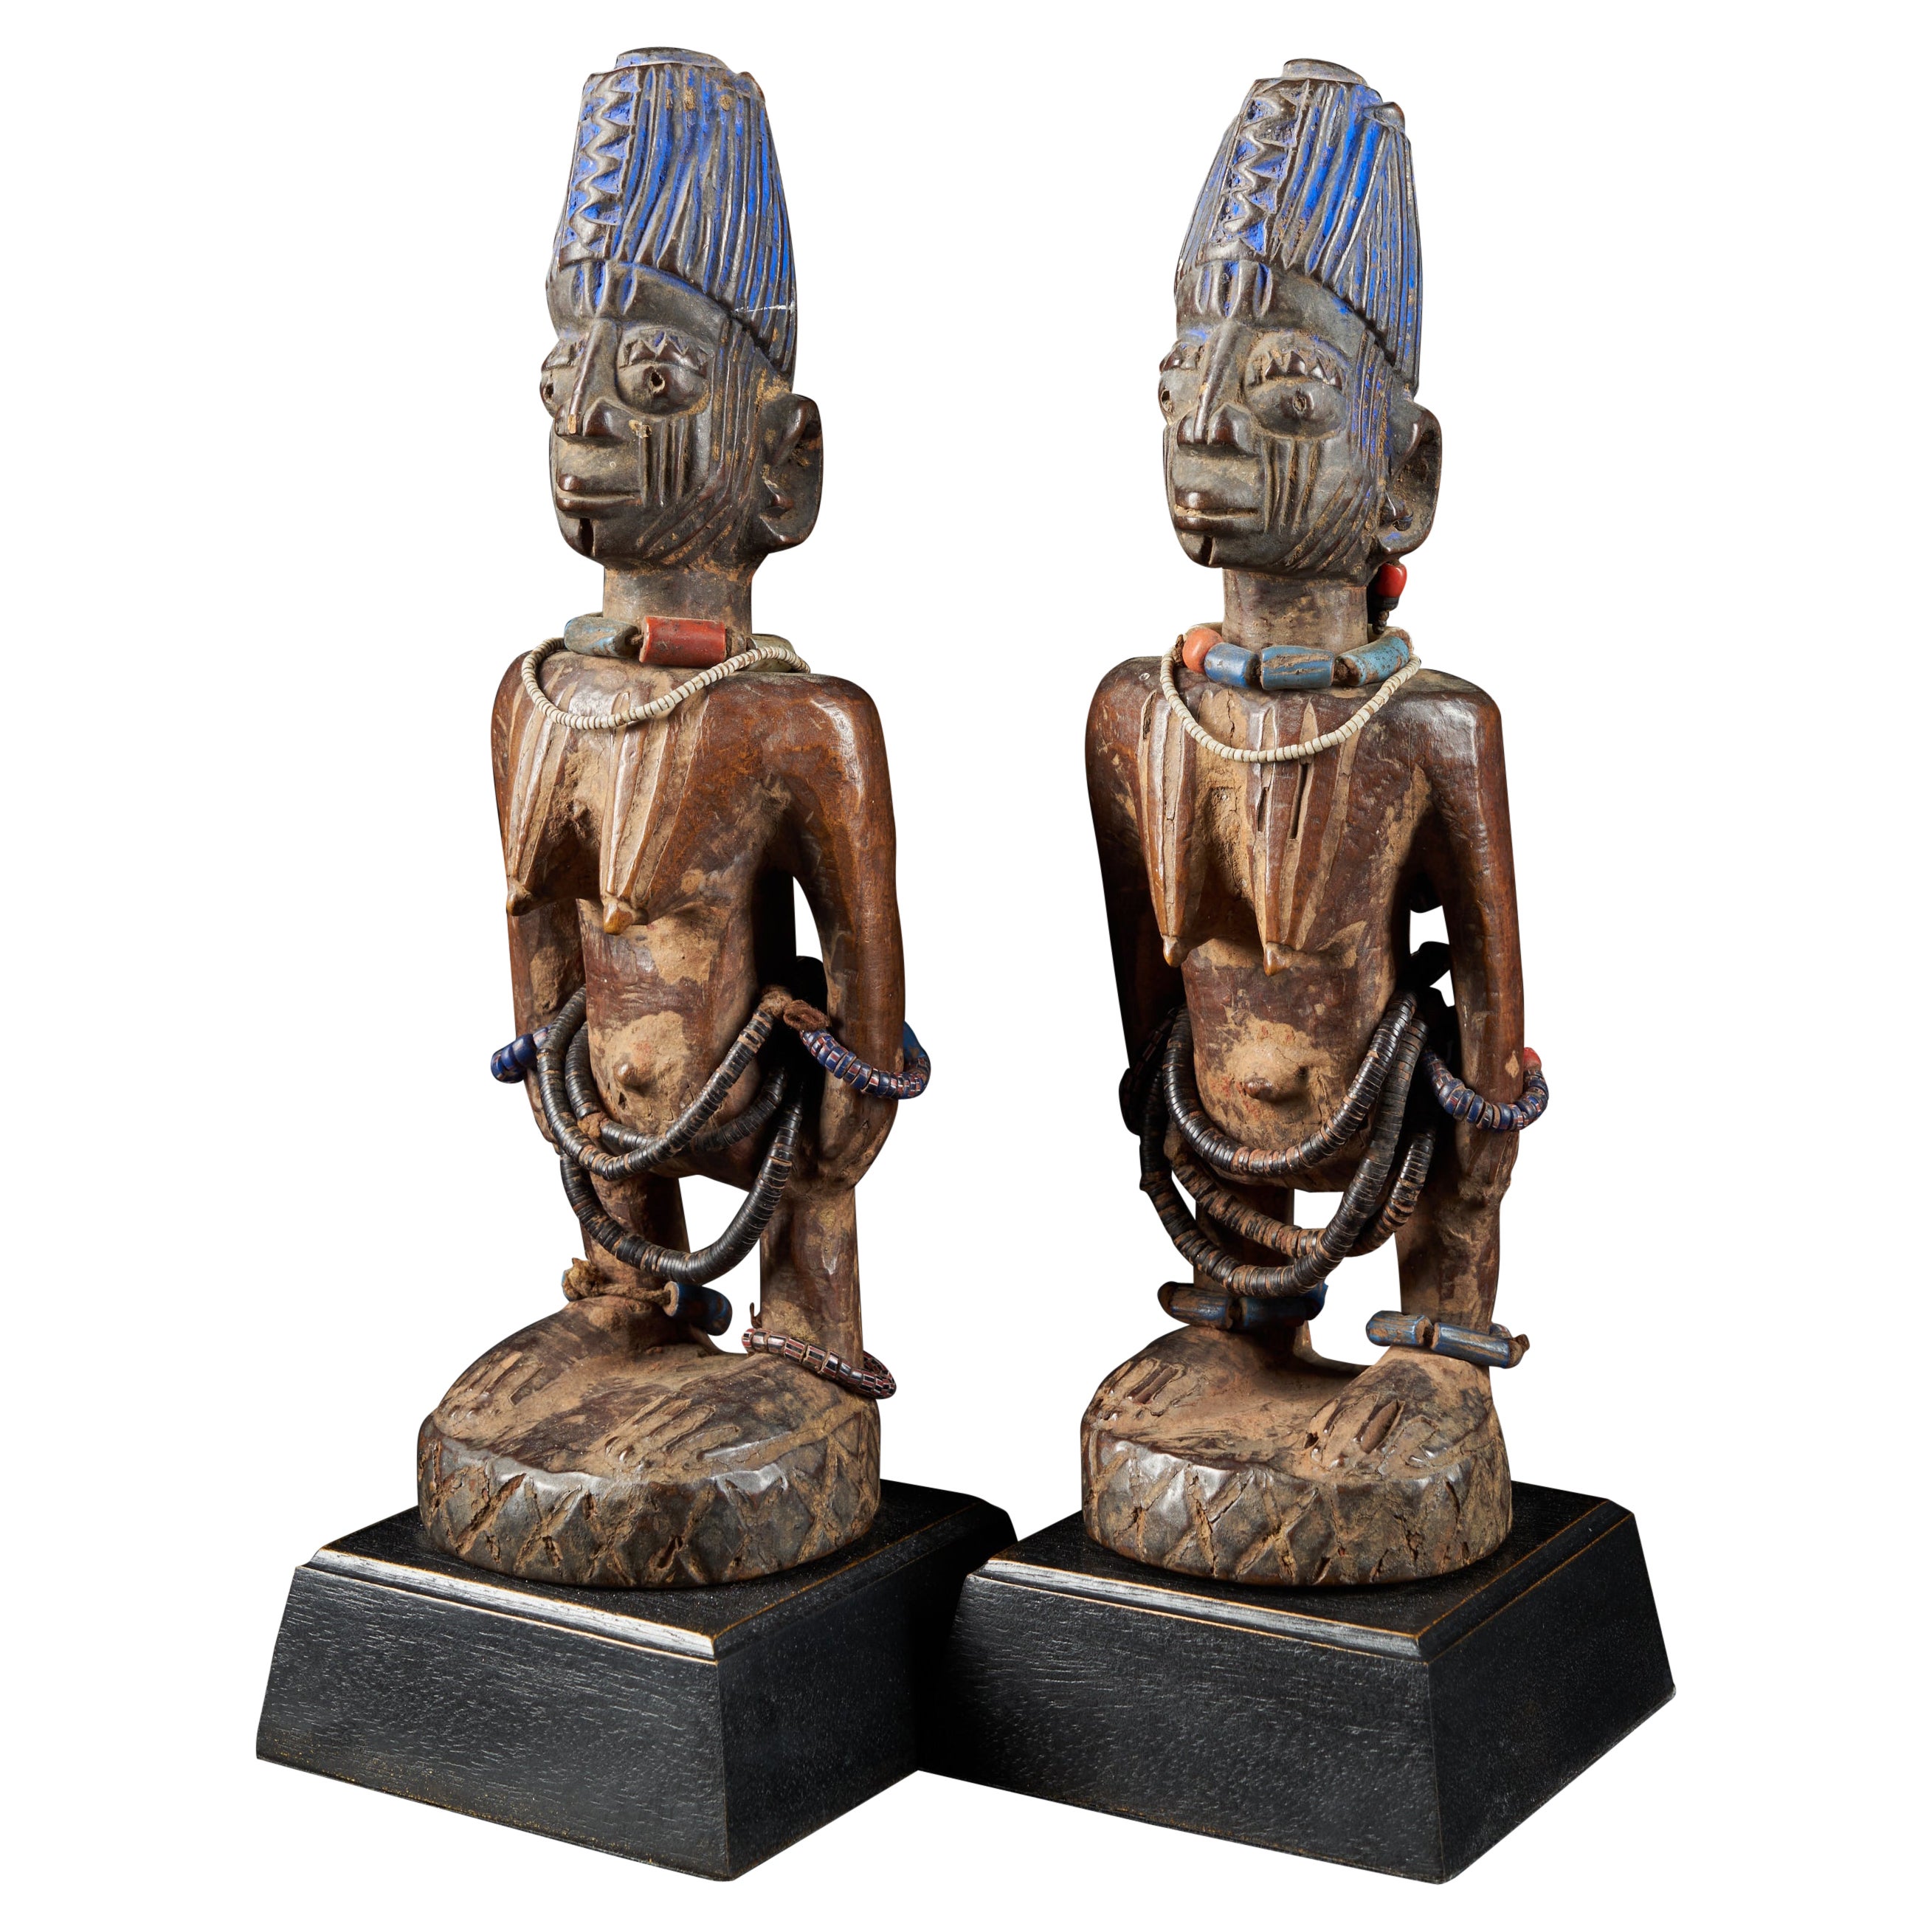 Pair of Decorative Figures ScuIptures Ibeji Twin Figures, Yoruba people Nigeria For Sale